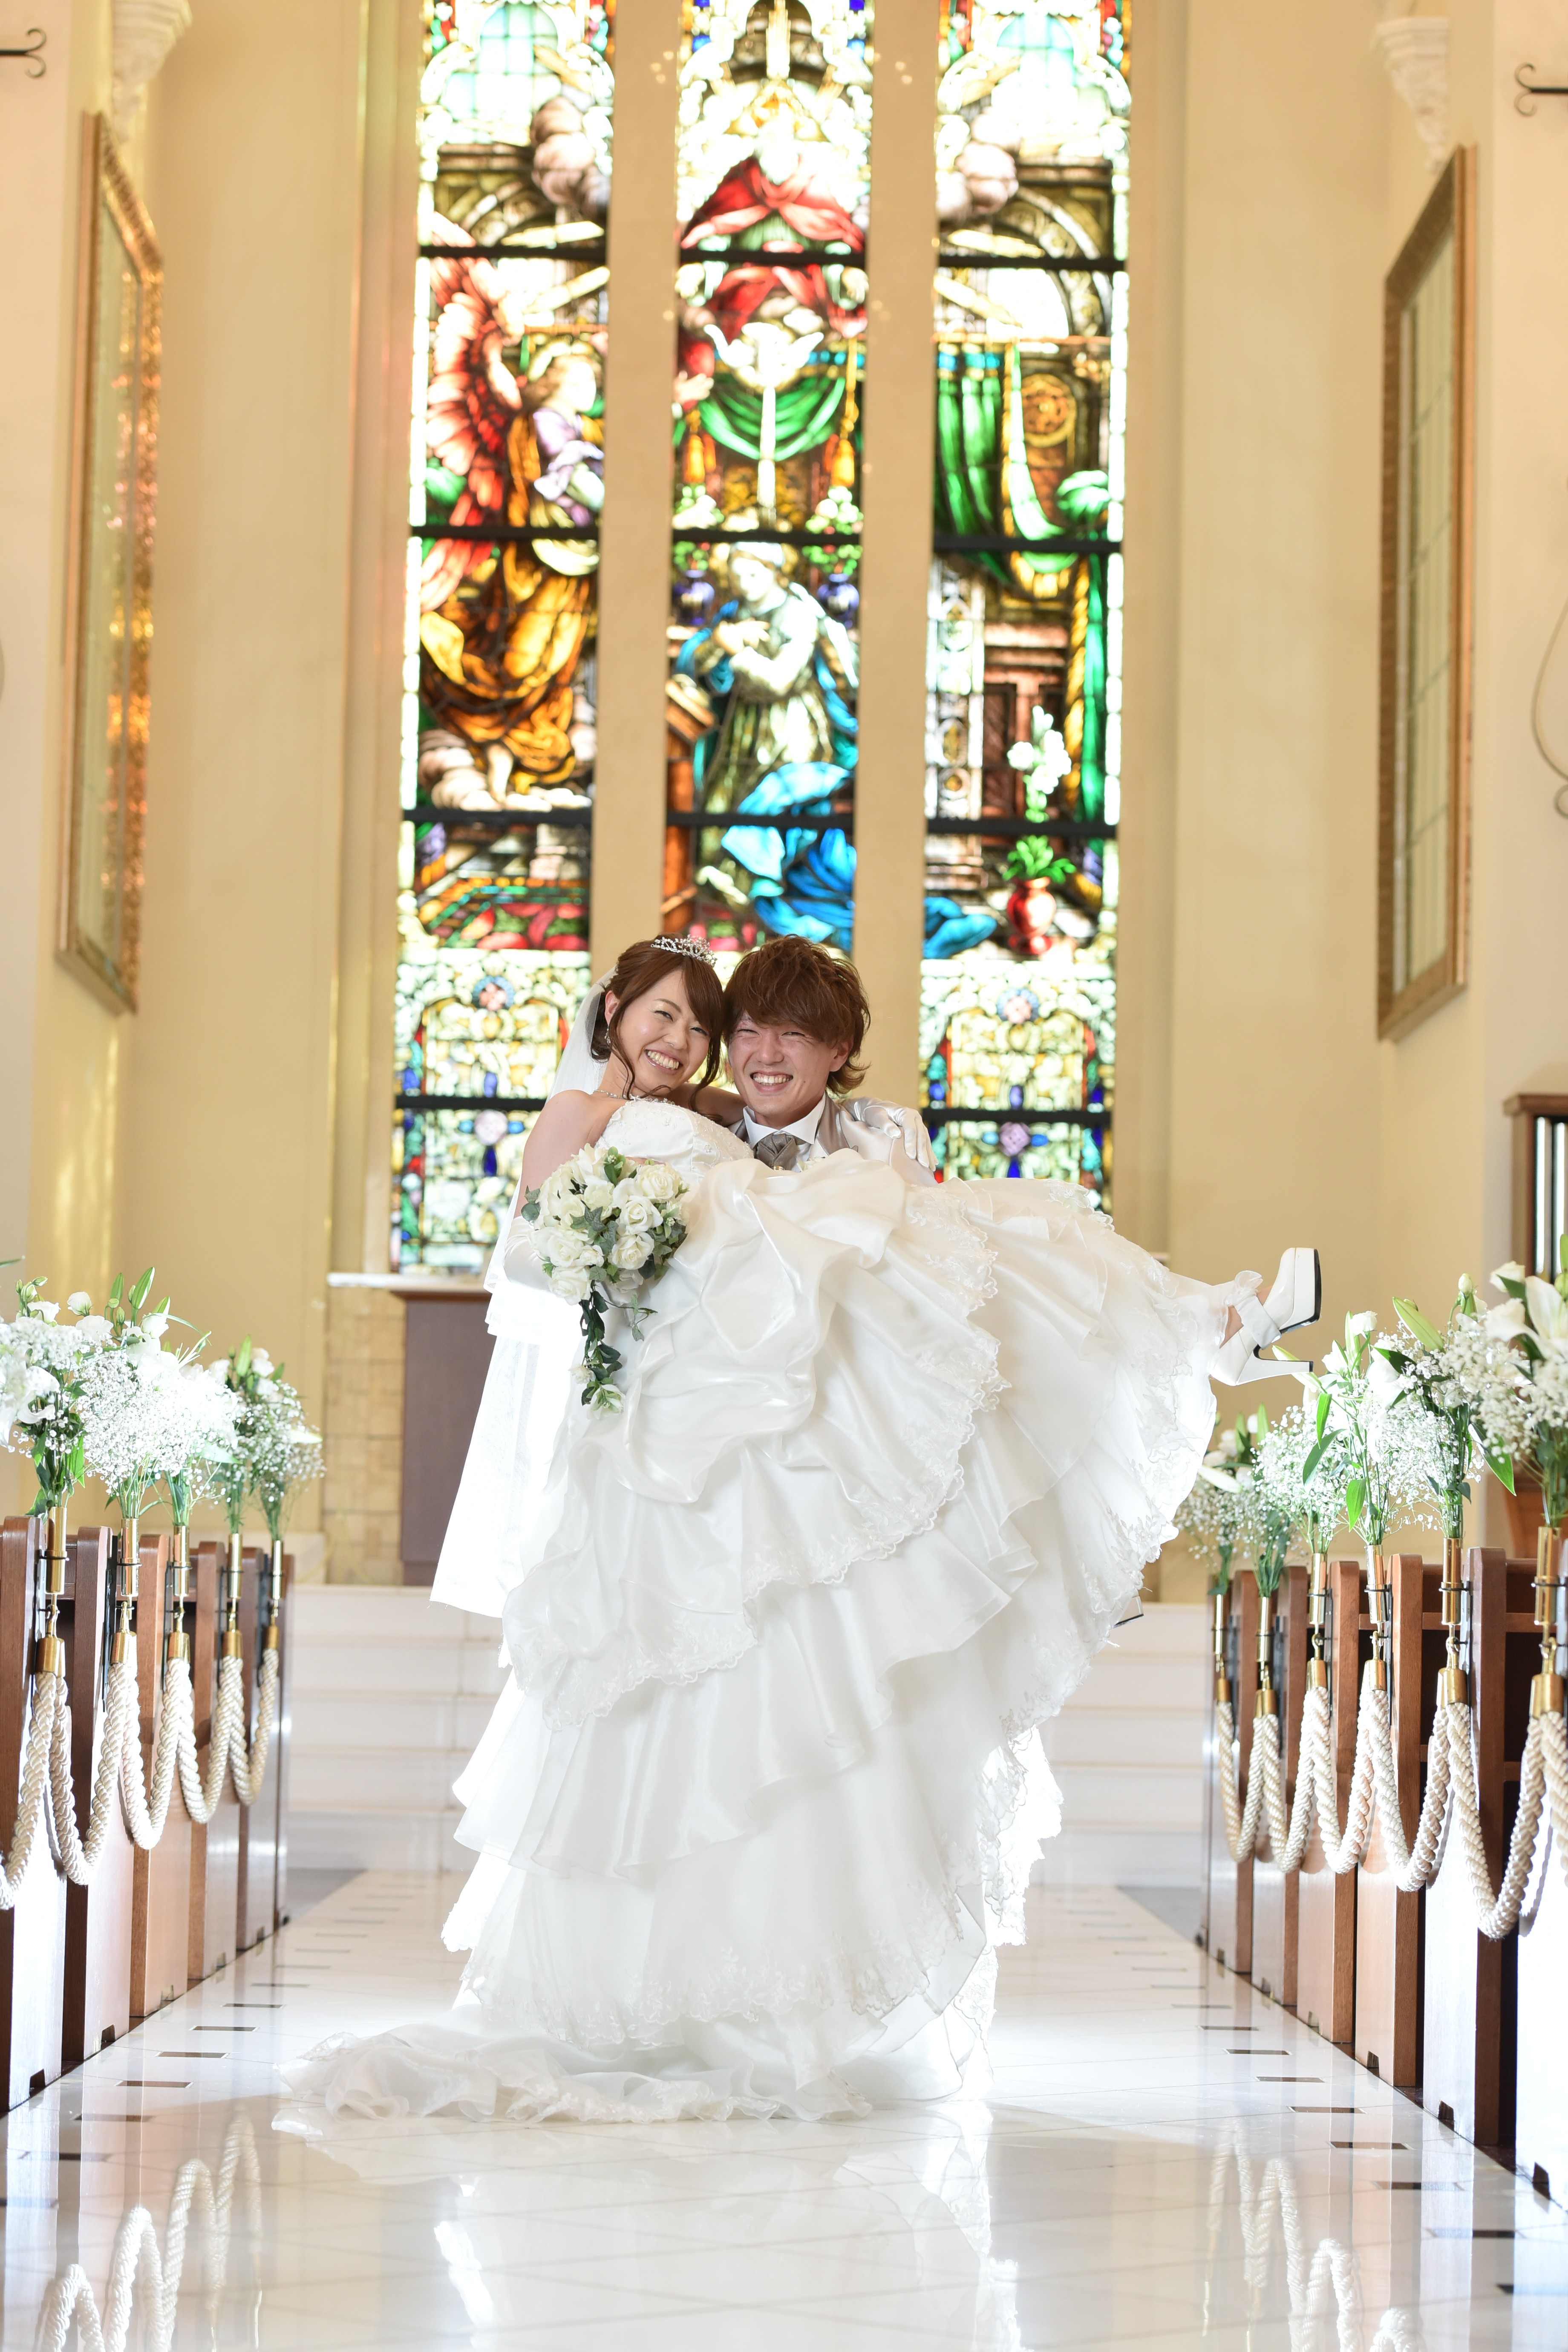 憧れのお姫様抱っこ マリエール太田 群馬県太田市の結婚式場 披露宴会場 挙式